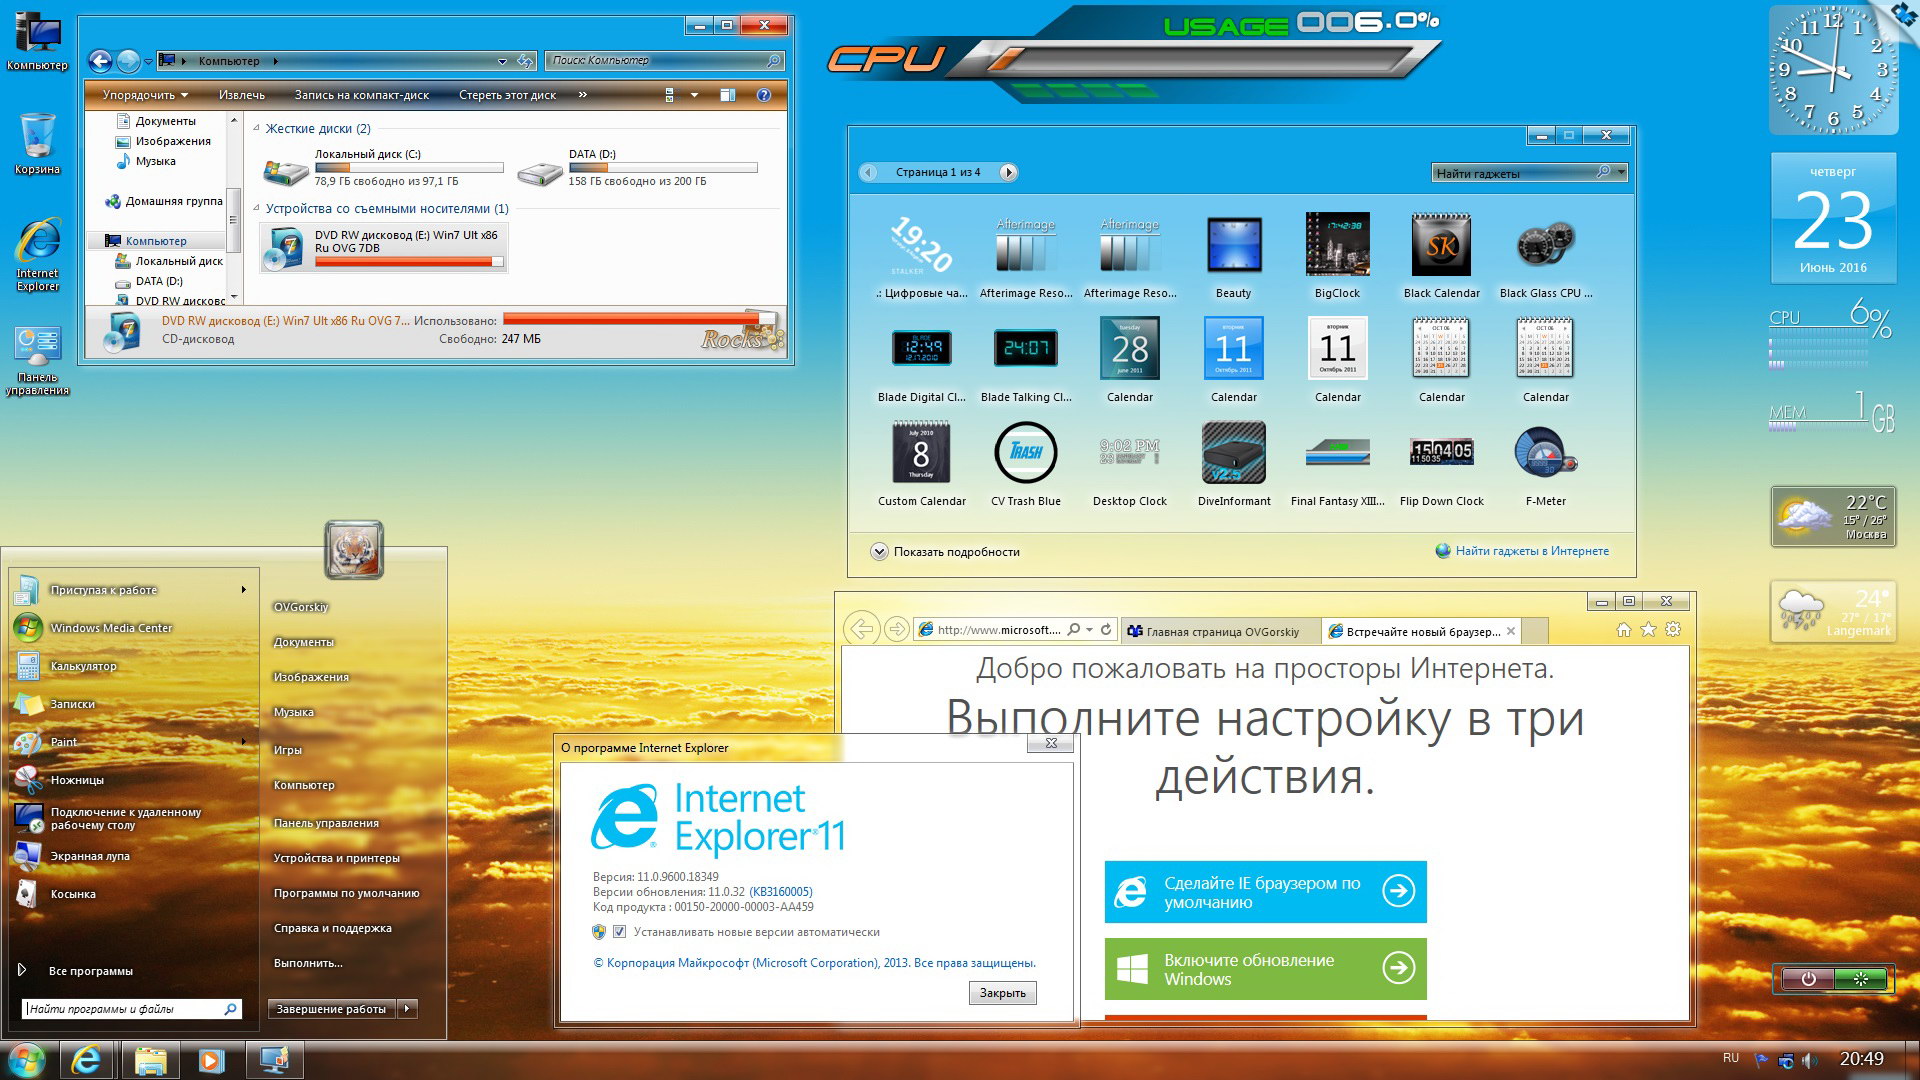 Телеграмм скачать бесплатно для компьютера на русском для виндовс 7 фото 80